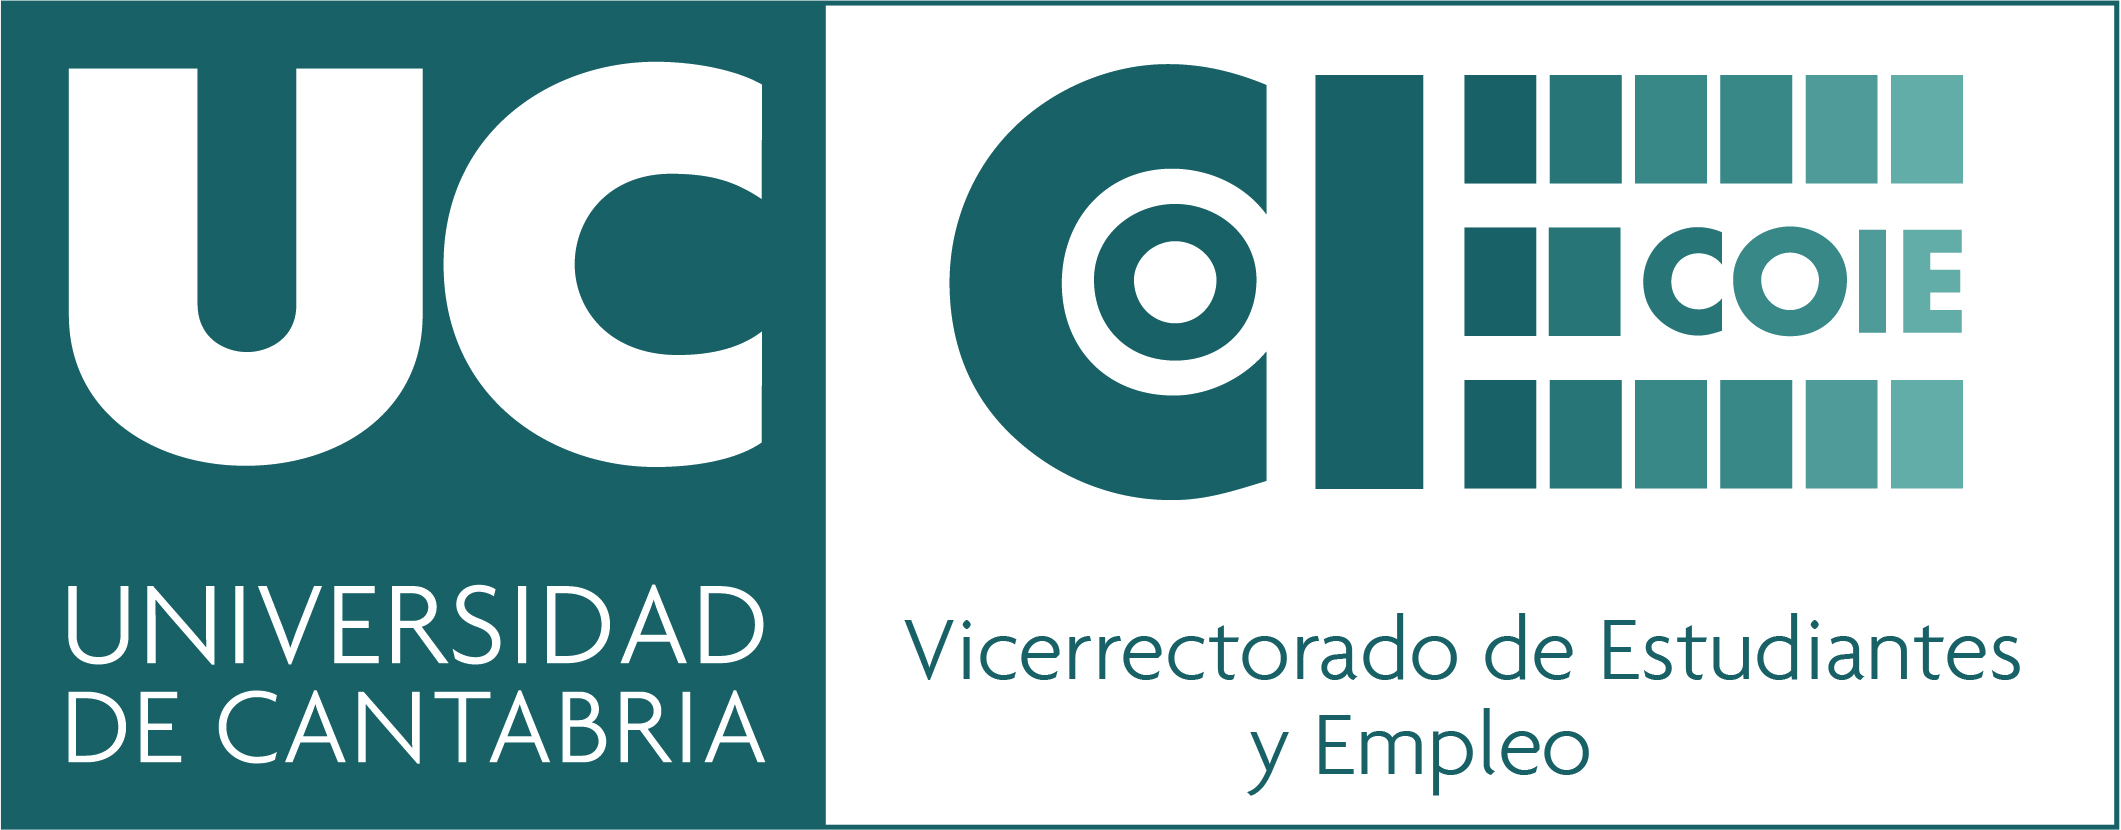 2021-01-11 Nuevo logo COIE.jpg